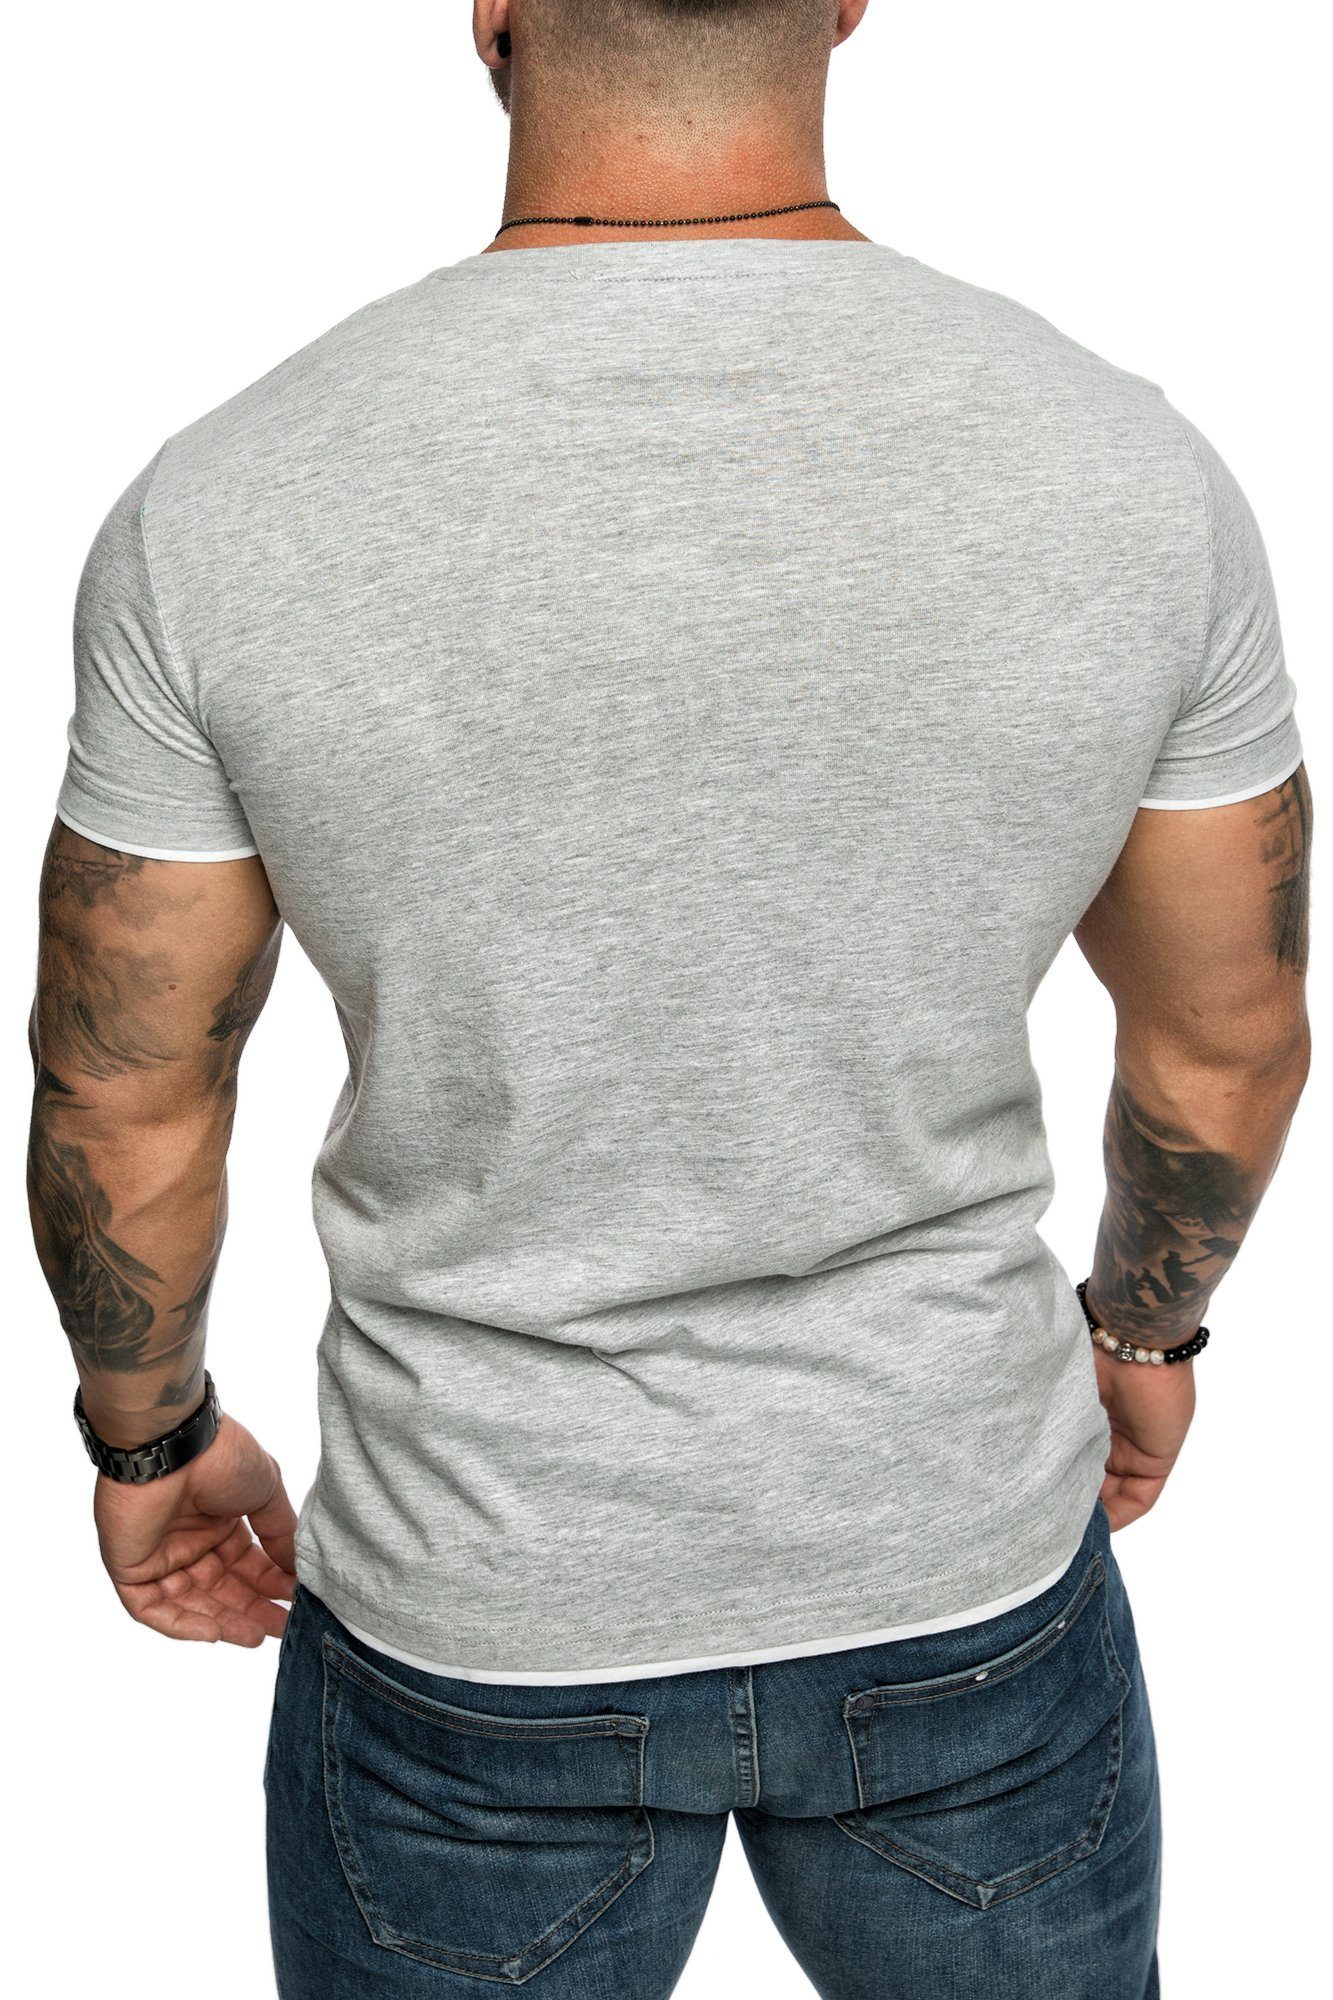 Amaci&Sons T-Shirt LAKEWOOD Herren Basic Grau/Weiß Slim-Fit Doppel Farbig Rundhalsausschnitt mit Shirt